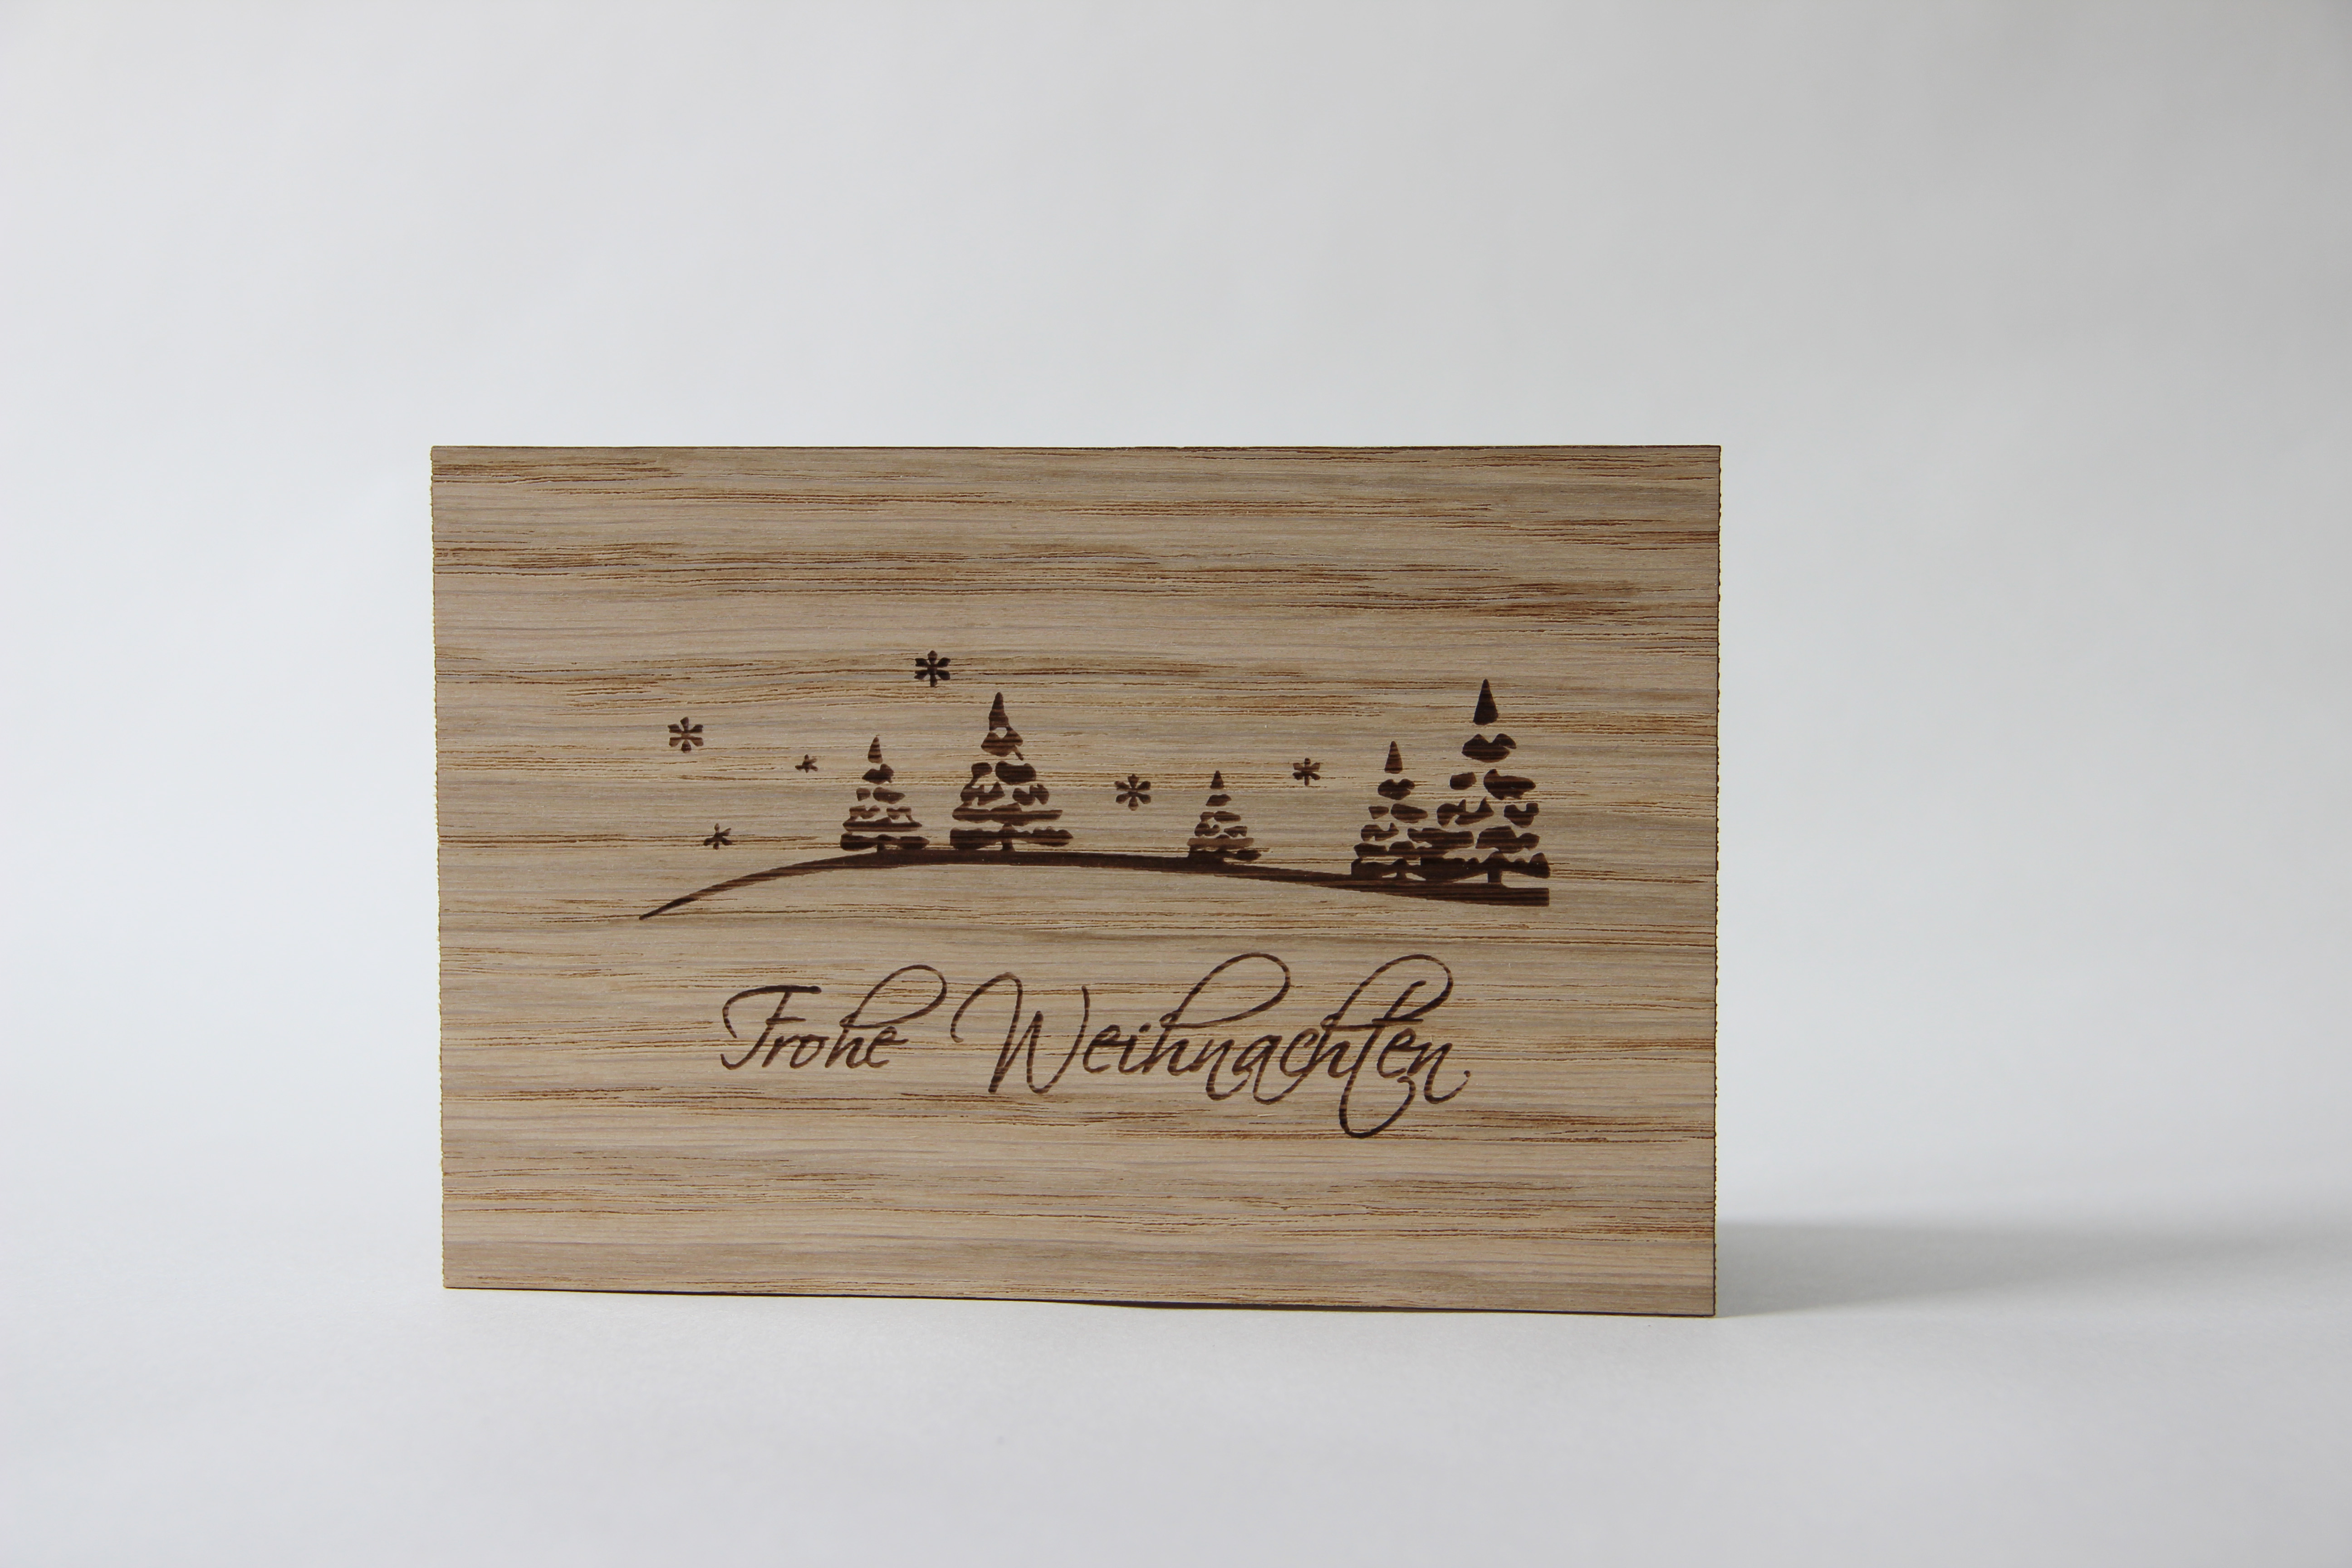 Holzgrusskarten - Weihnachtskarte "Frohe Weihnachten" aus Eiche, Nadelbäume, Tannen